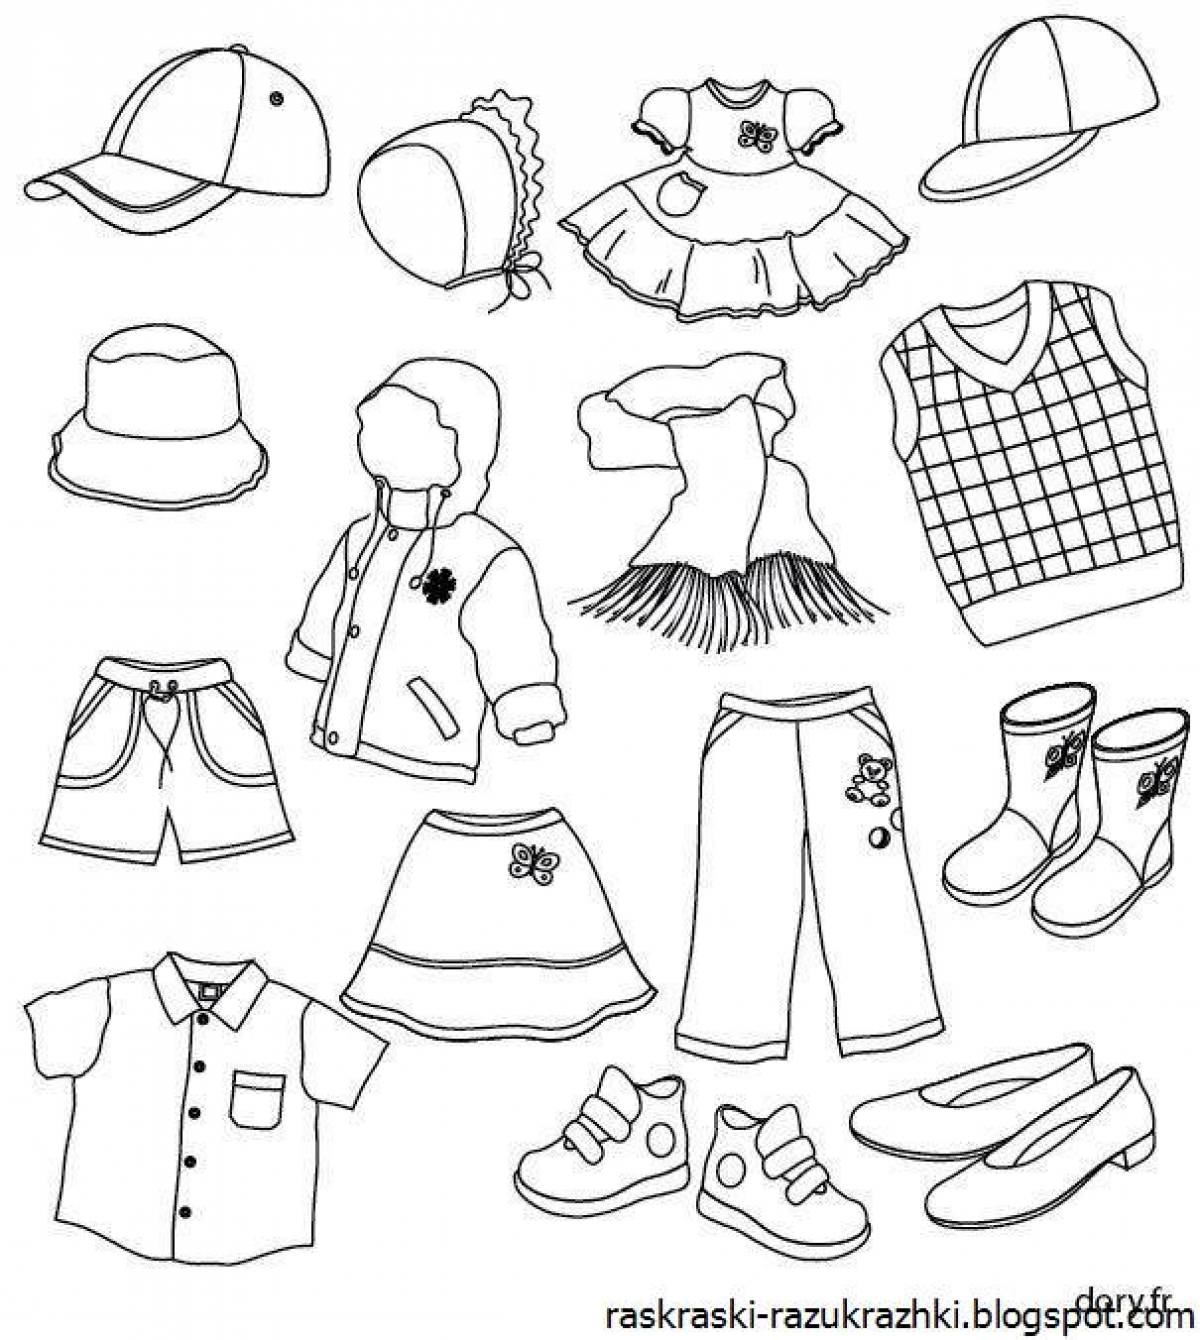 Красочная страница раскраски одежды для детей 5-6 лет